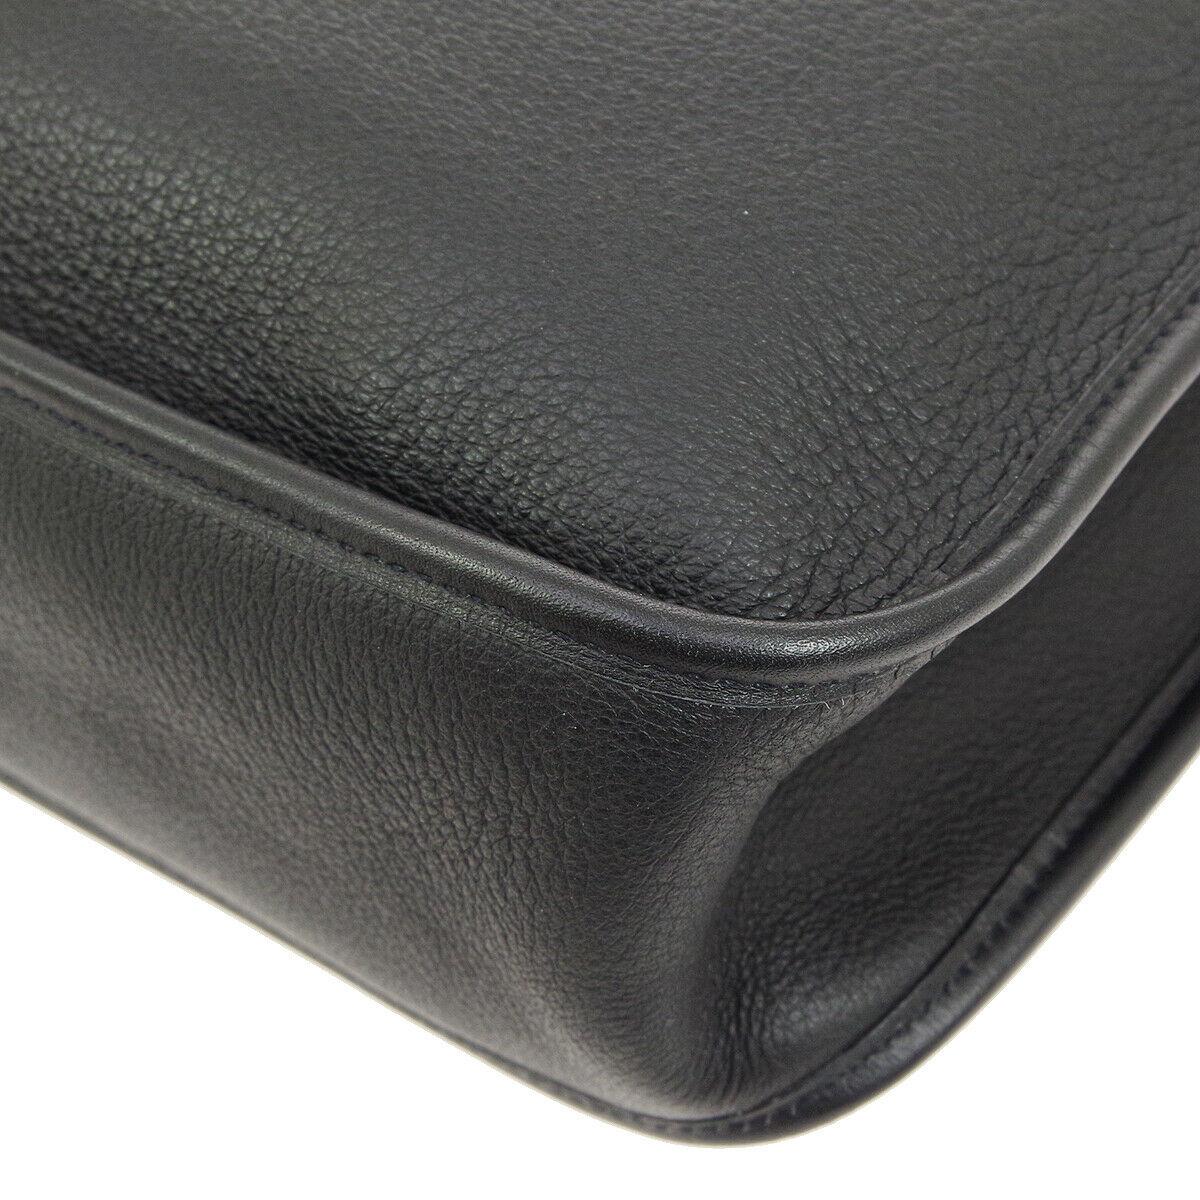 Hermes Black Leather Canvas Gold Toggle Carryall Shoulder Bag 1